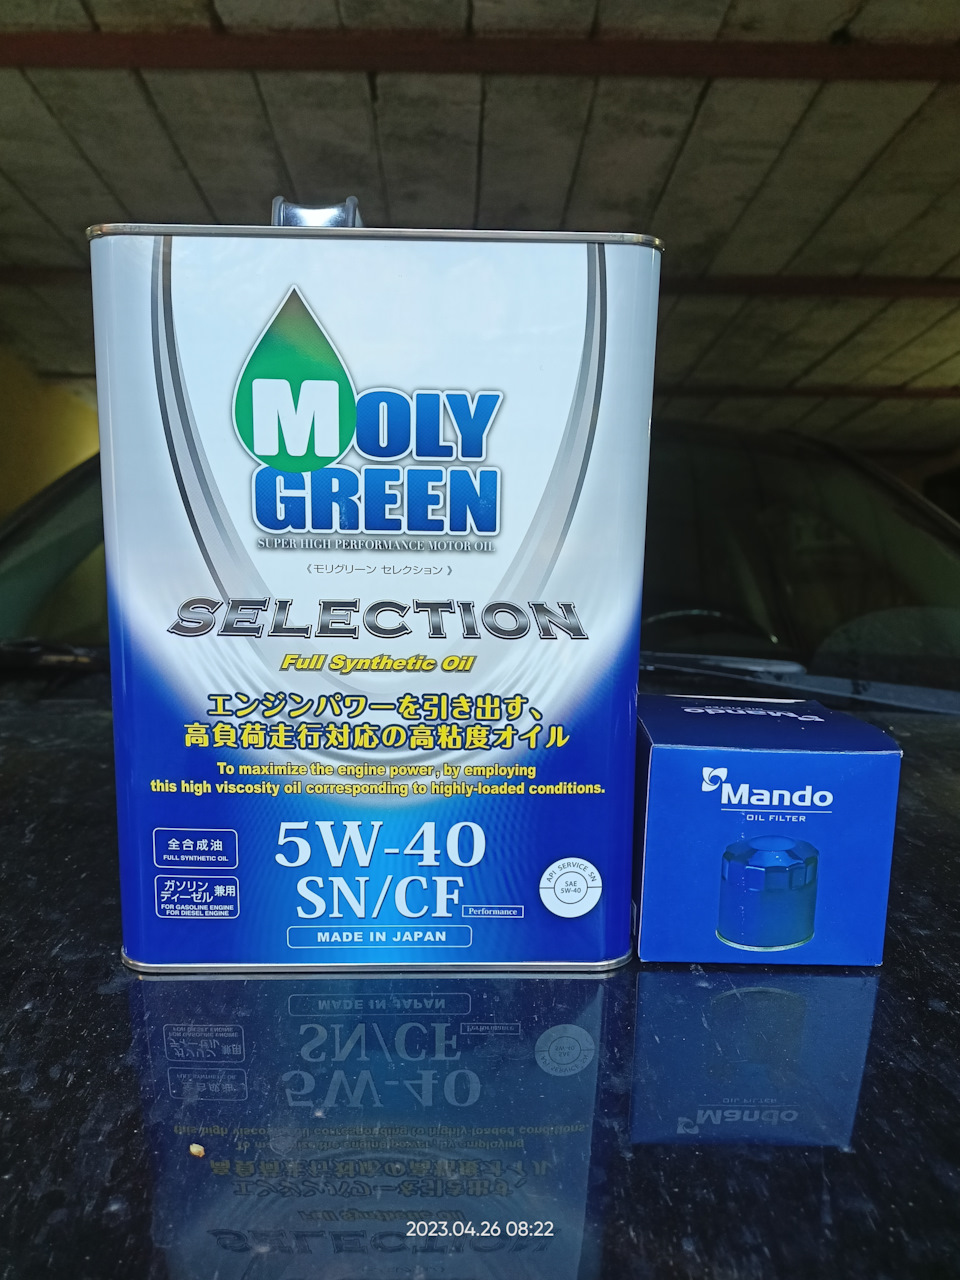 Moly green 5w40. Японское моторное масло Moly Green. Moly Green в руке. Моли Грин 5w40 допуски. Hyundai | Kia 97690-2f100 размер.